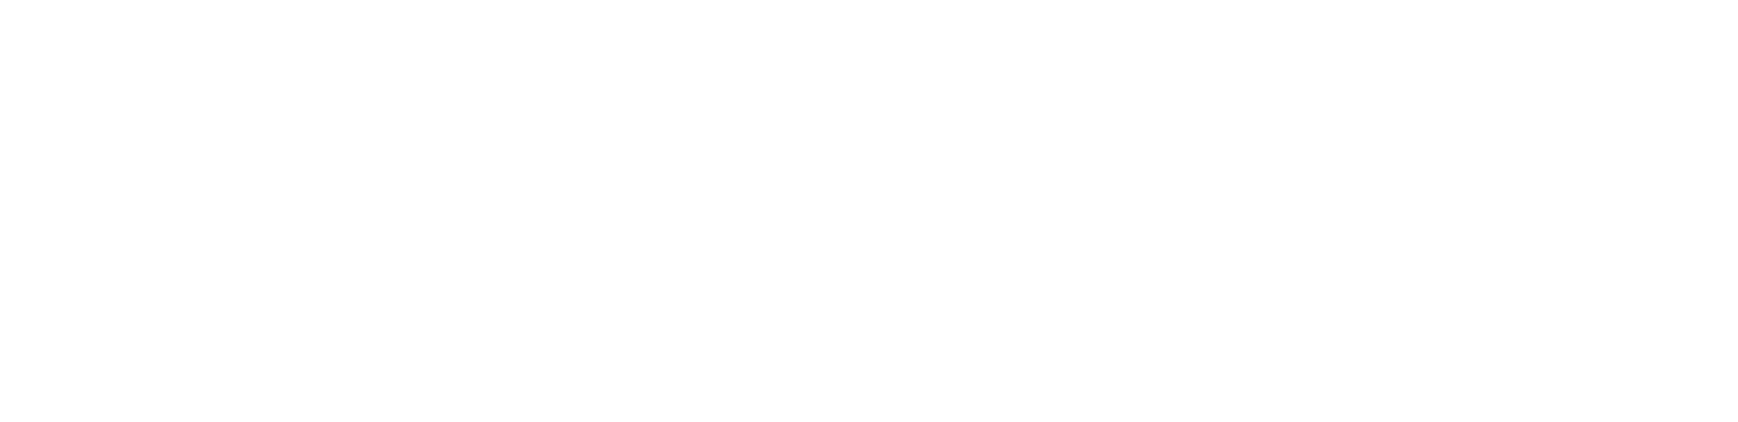 Pulseroller